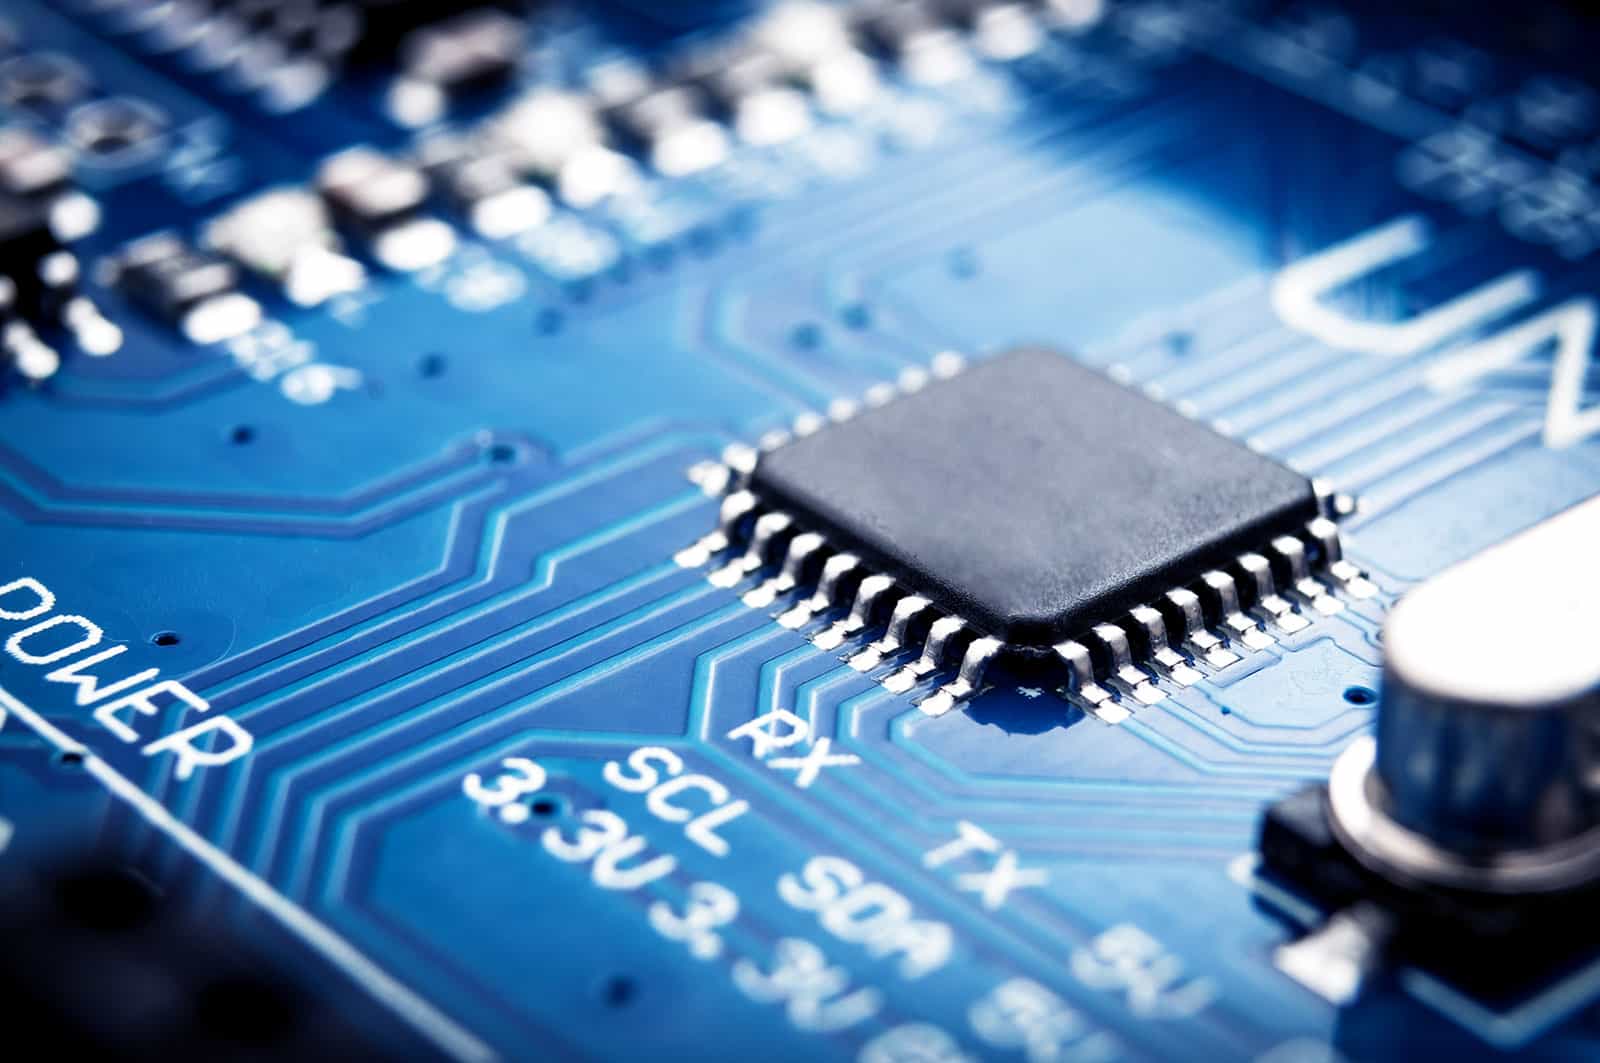 Thiết bị bán dẫn (Semiconductor) là gì? Ứng dụng của thiết bị bán dẫn